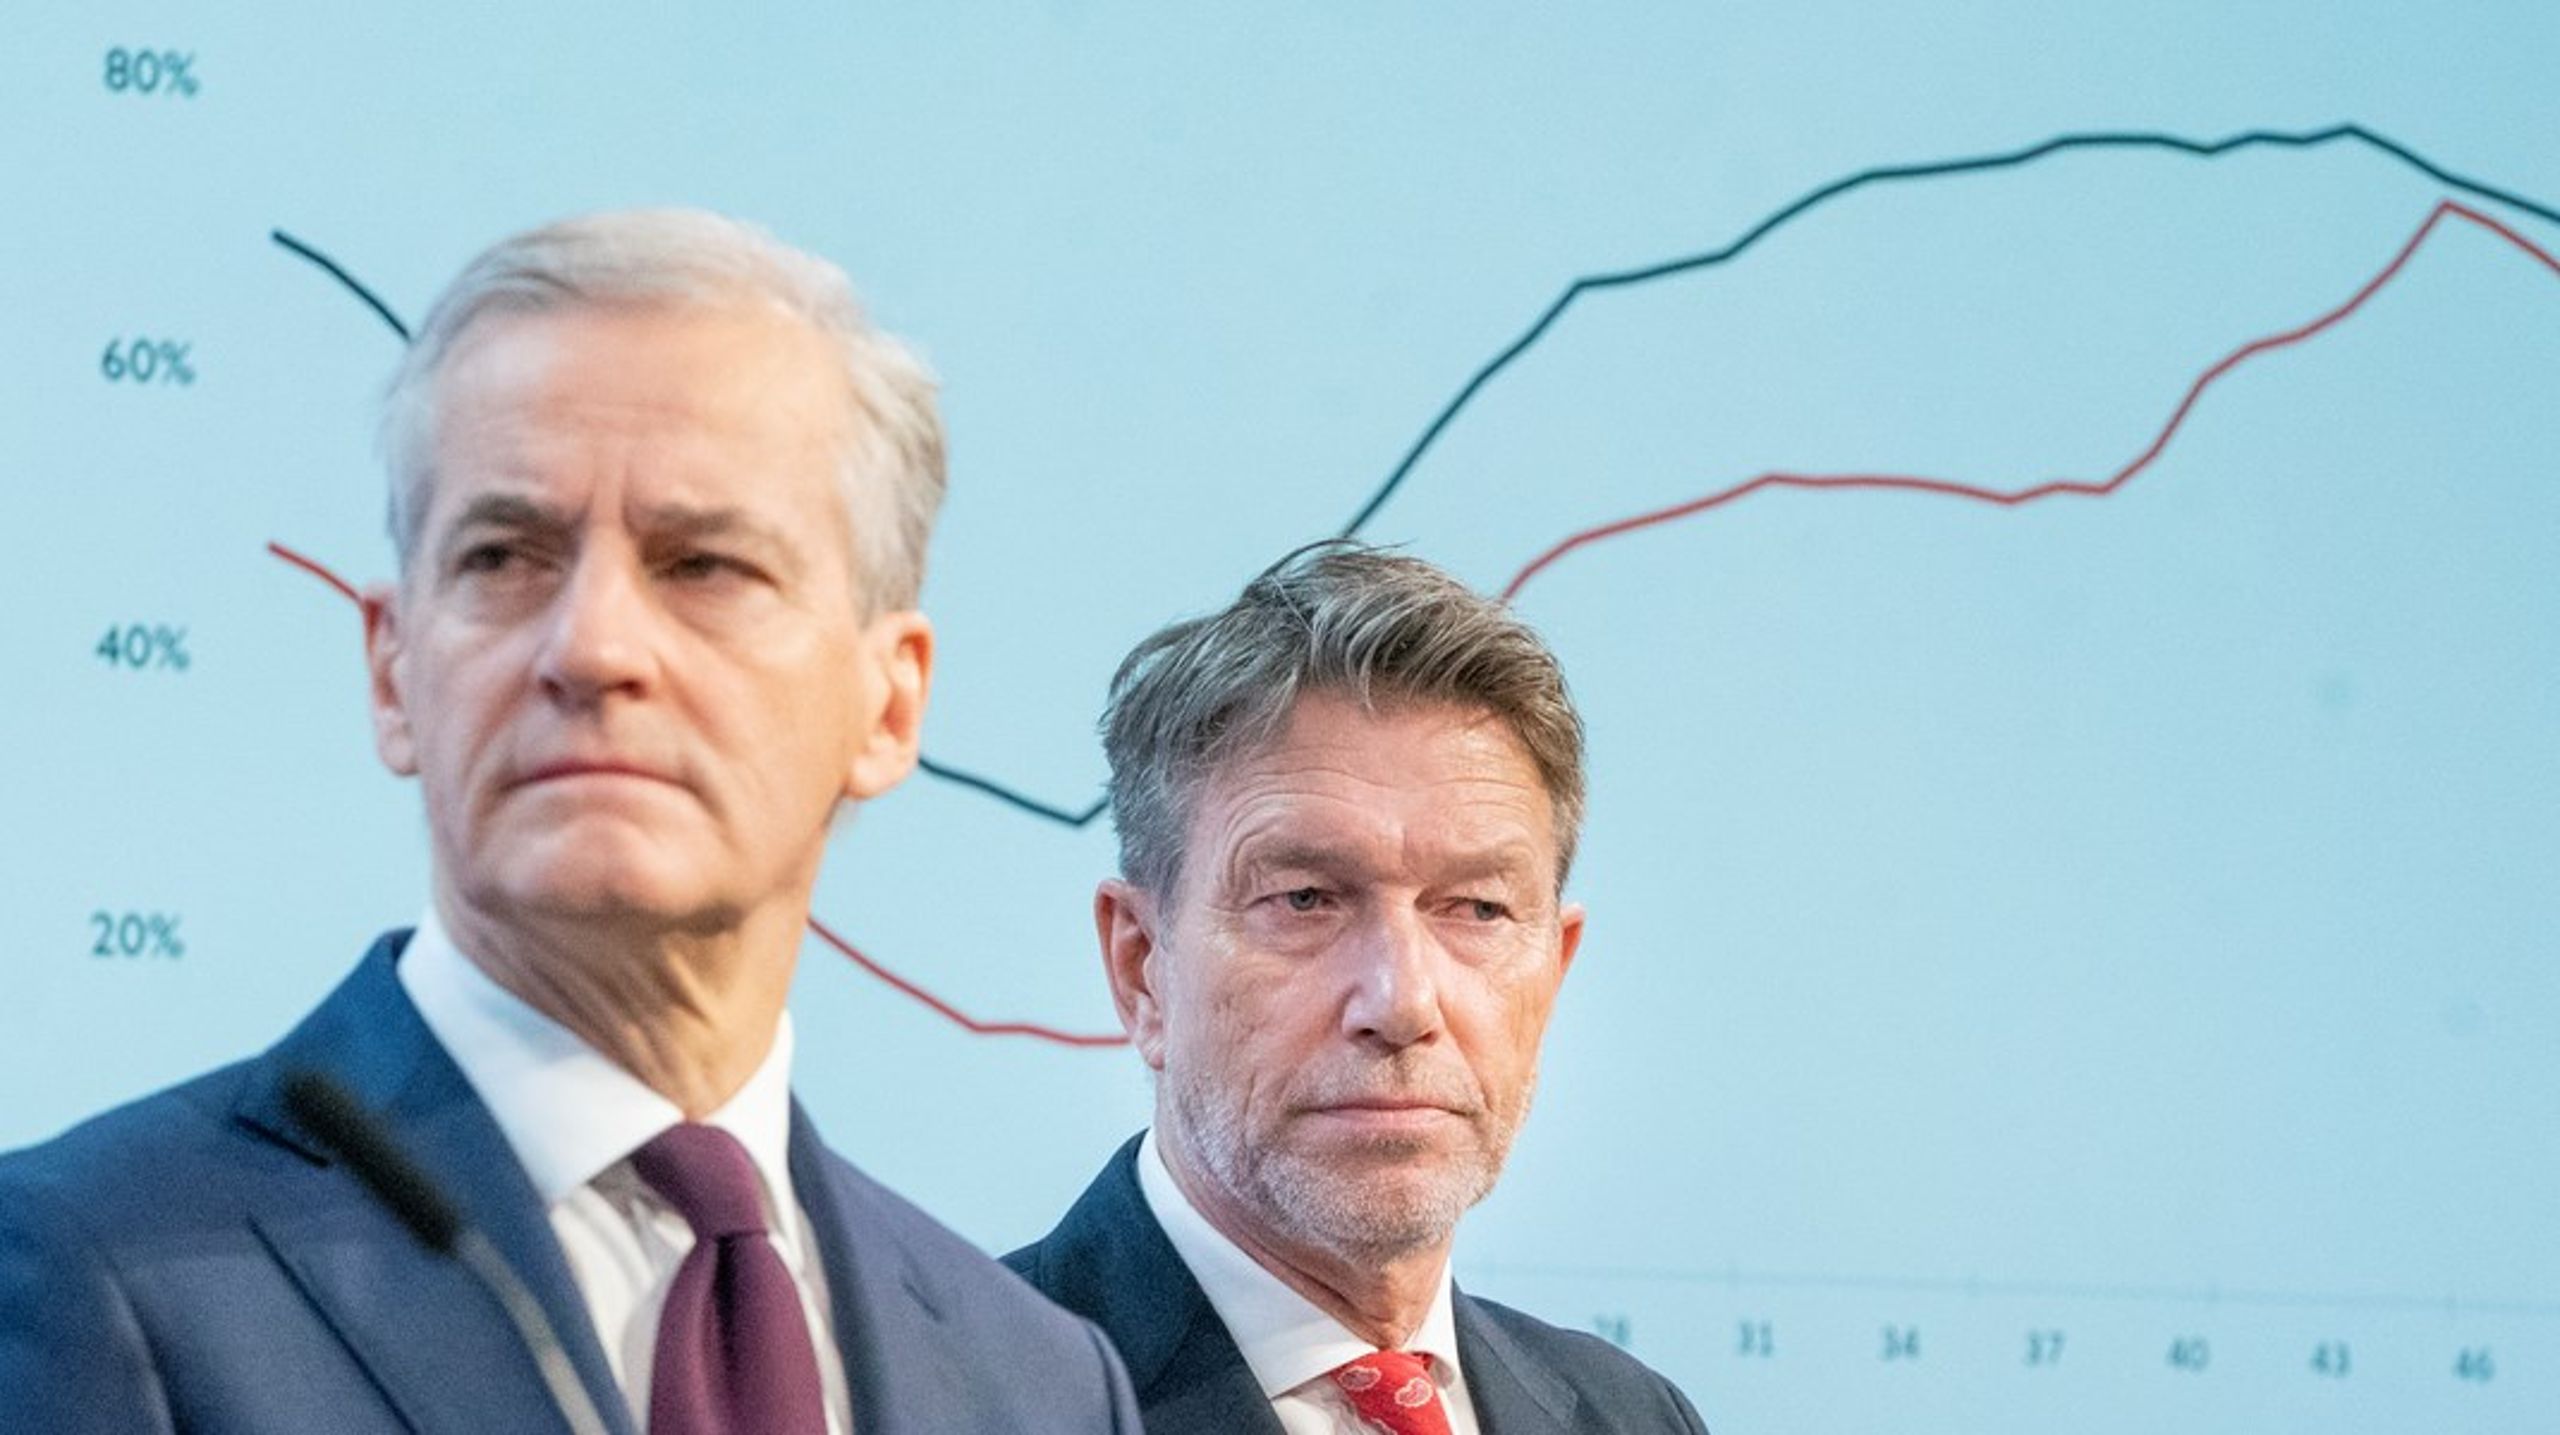 Statsminister Jonas Gahr Støre og olje- og energiminister Terje Aasland under pressekonferansen fredag morgen.